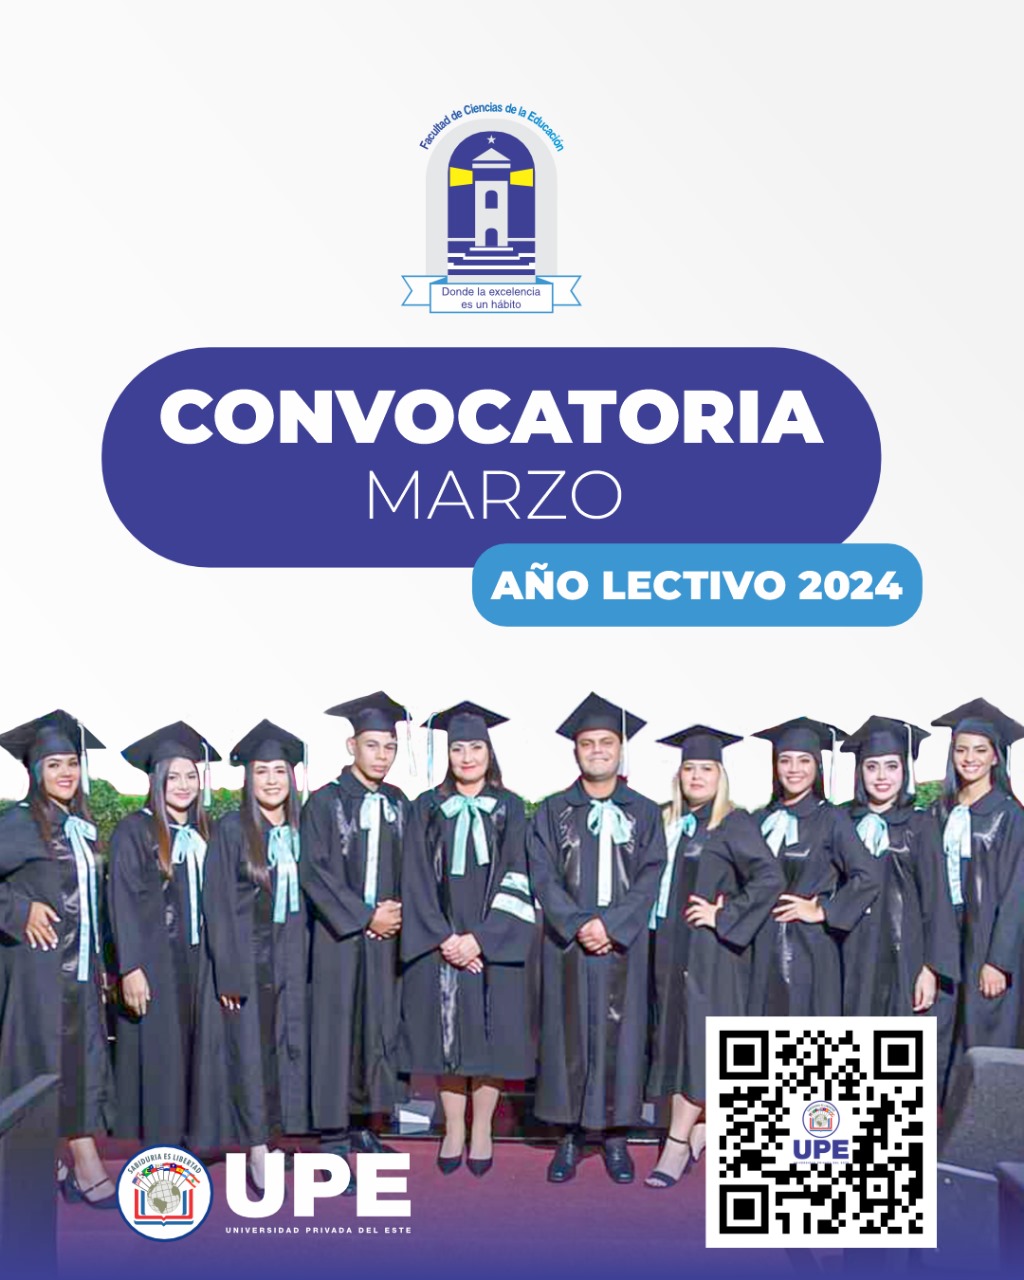 Curso de Especialización Didáctica Universitaria UPE 2024 